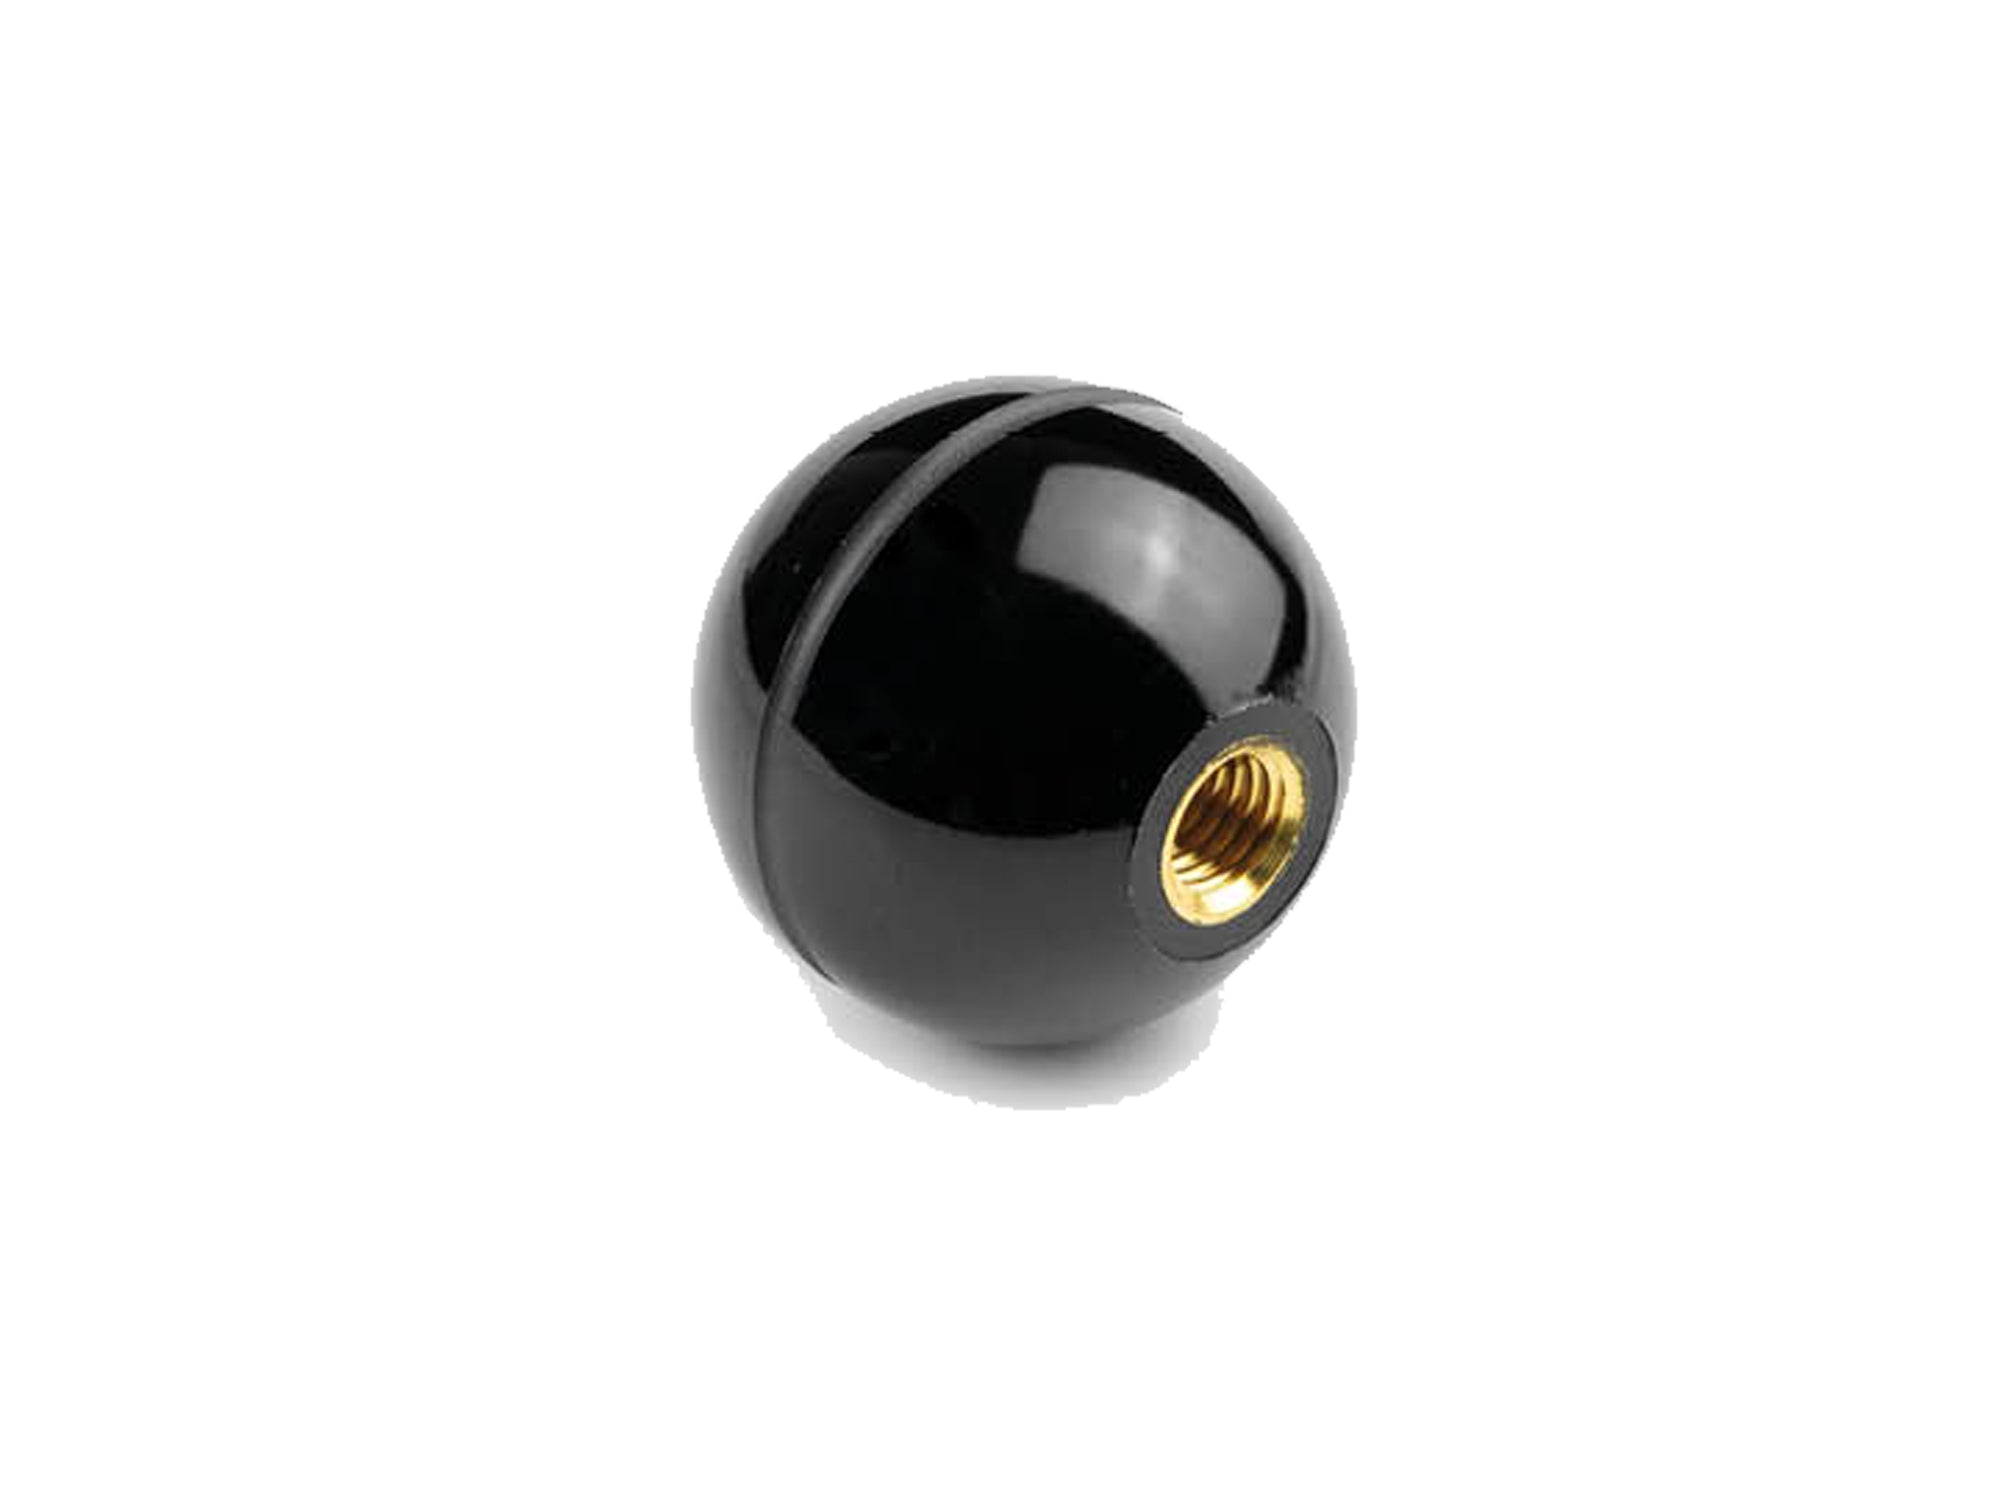 PBO - Pomolo a sfera con bussola in ottone e foro cieco filettato